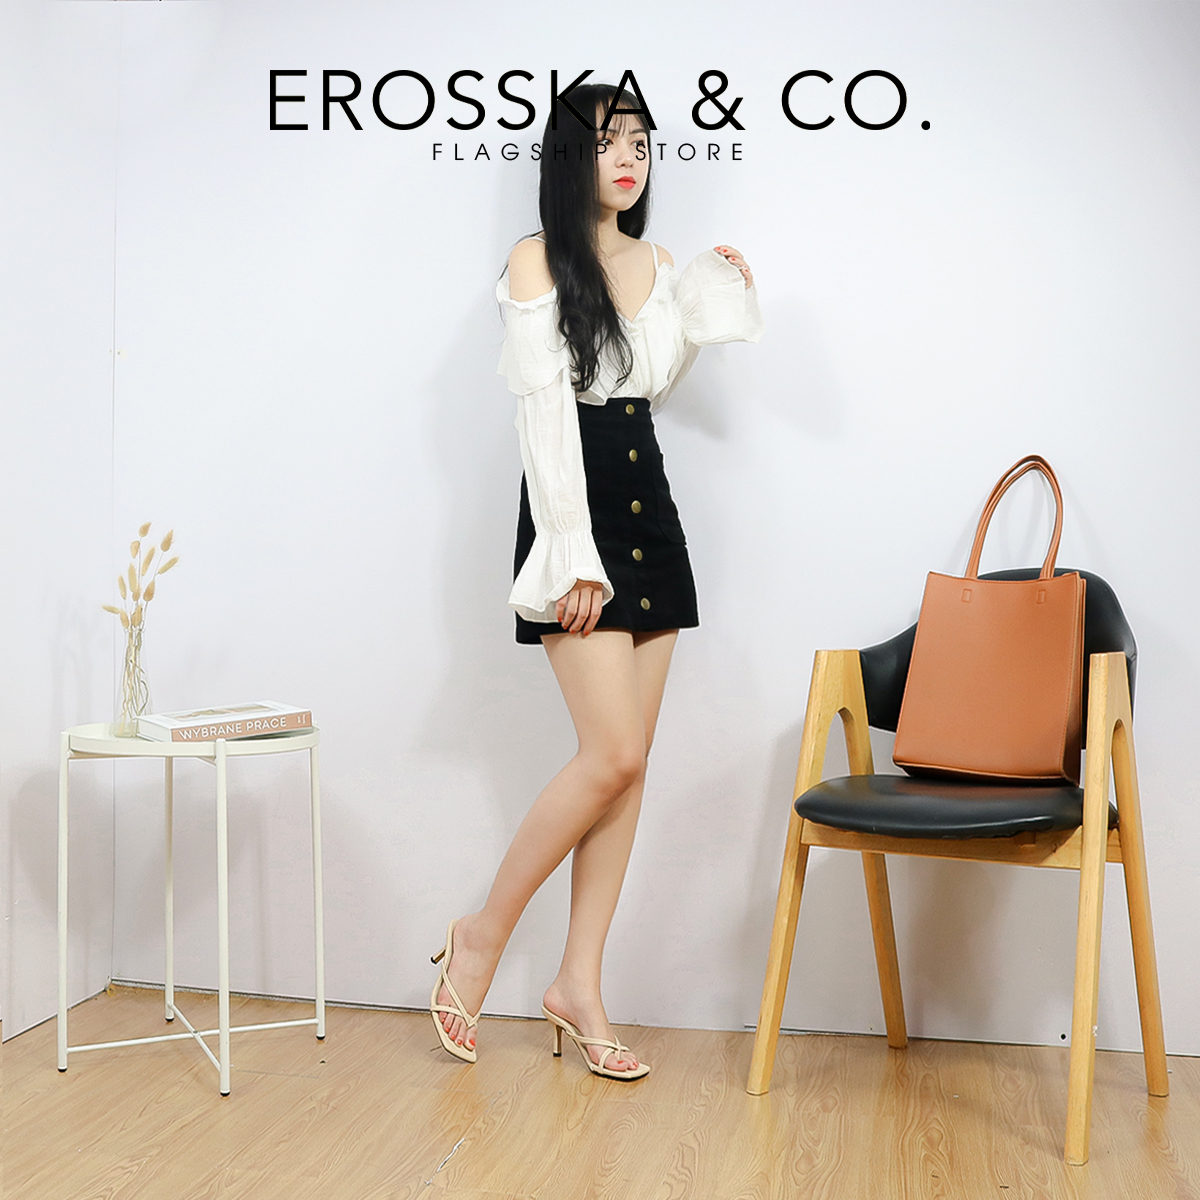 Dép cao gót thời trang Erosska mũi vuông kiểu dáng xỏ ngón phối dây quai mảnh gót nhọn cao 7cm màu nude - EM060